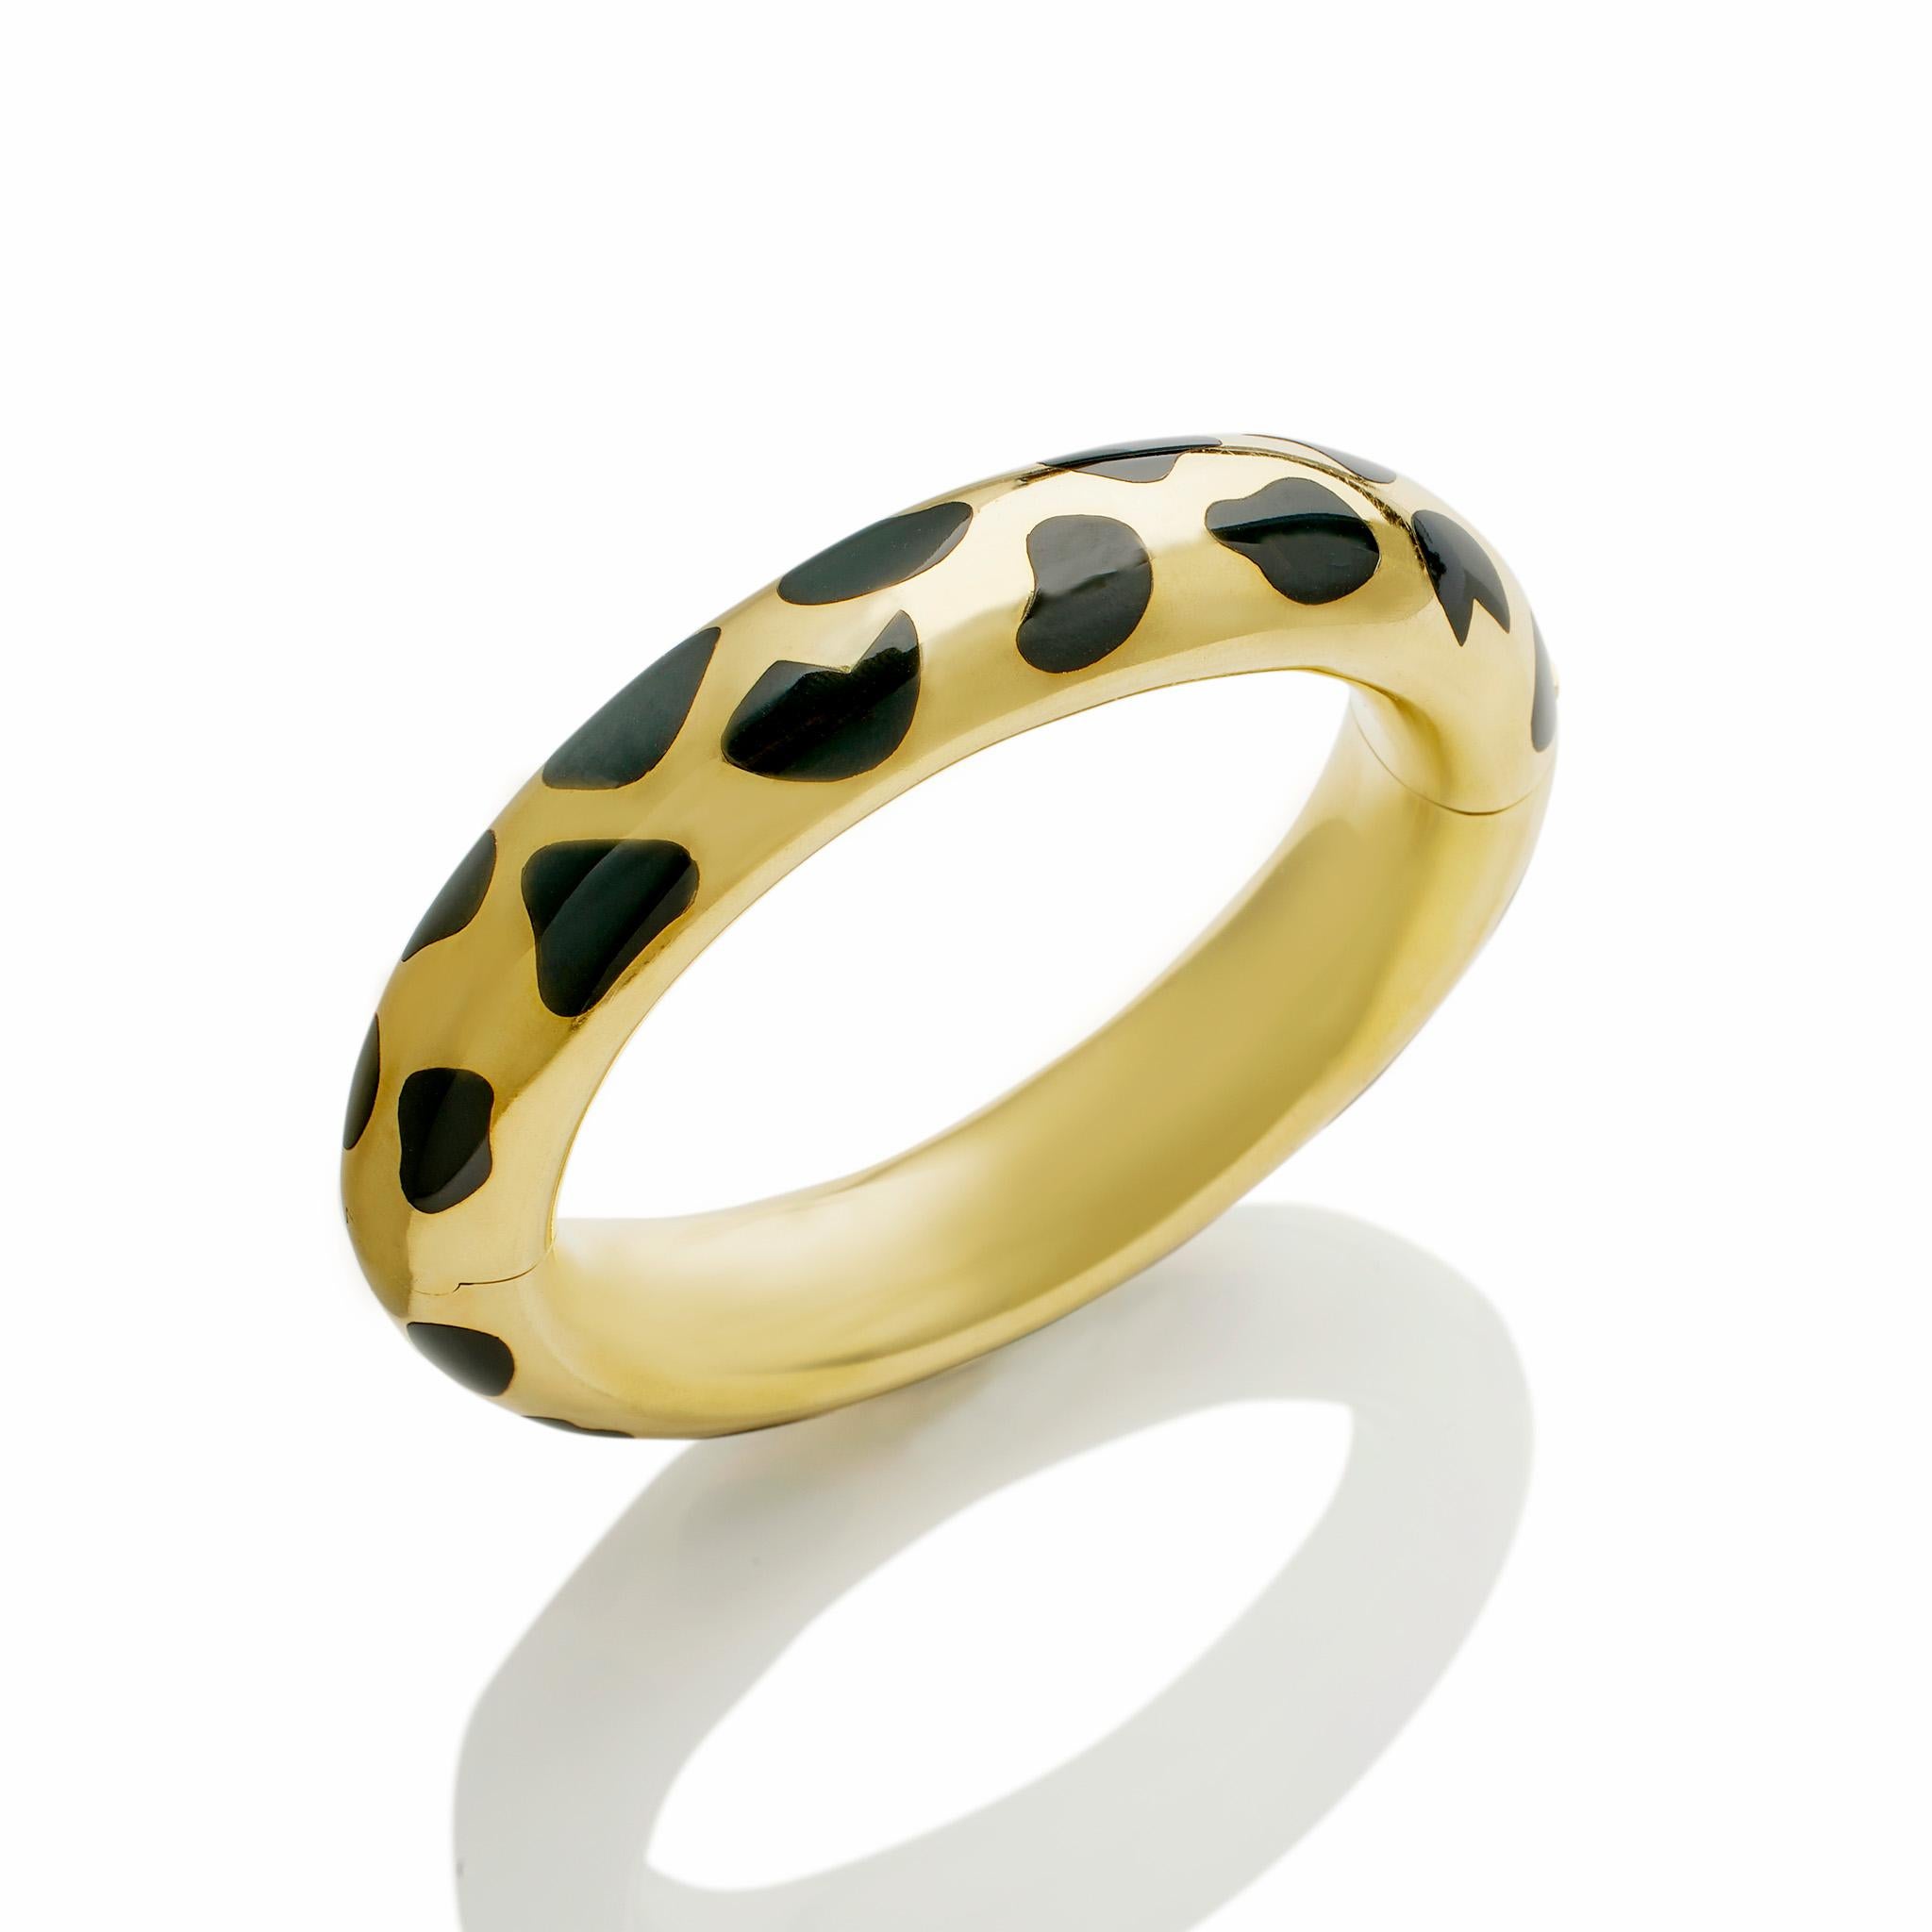 Créé par Tiffany & Co dans les années 1970, ce bracelet en or 18 carats et jade noir a été conçu par Angela Cummings. Le bracelet articulé en or 18 carats poli est incrusté de taches irrégulières de jade noir ressemblant à une peau de léopard qui